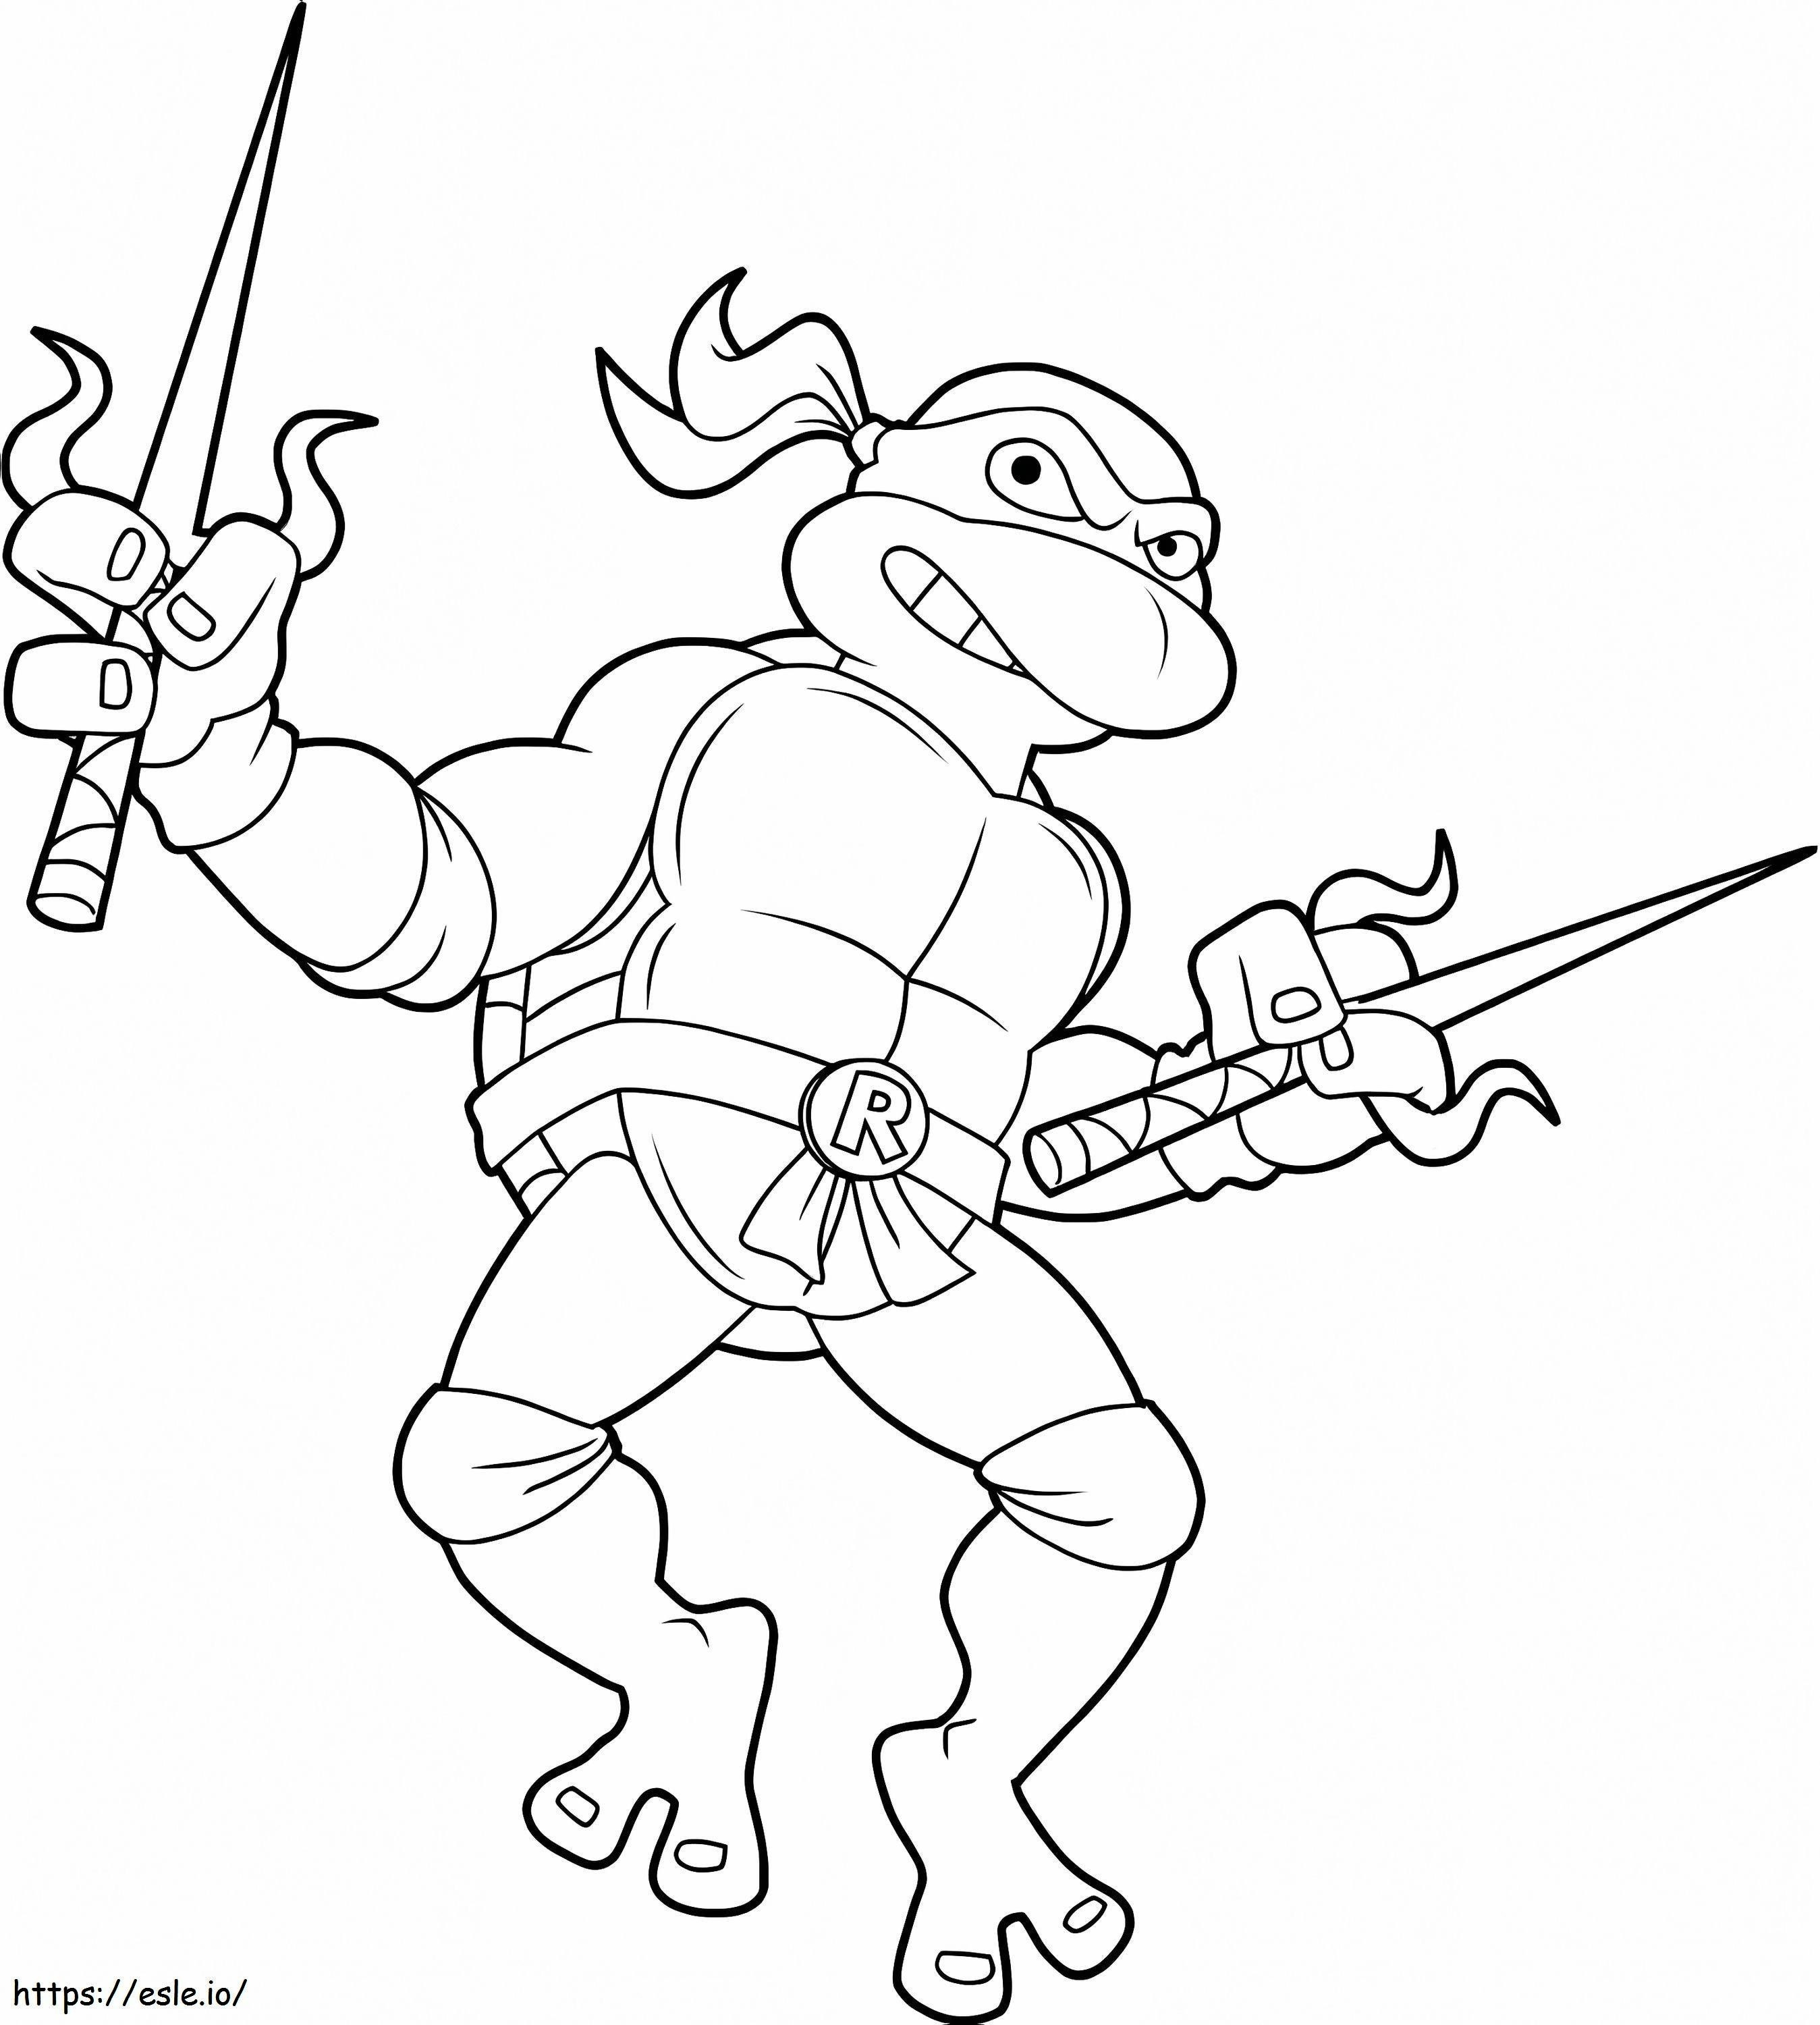 Ninja-Schildkröte und Messer ausmalbilder